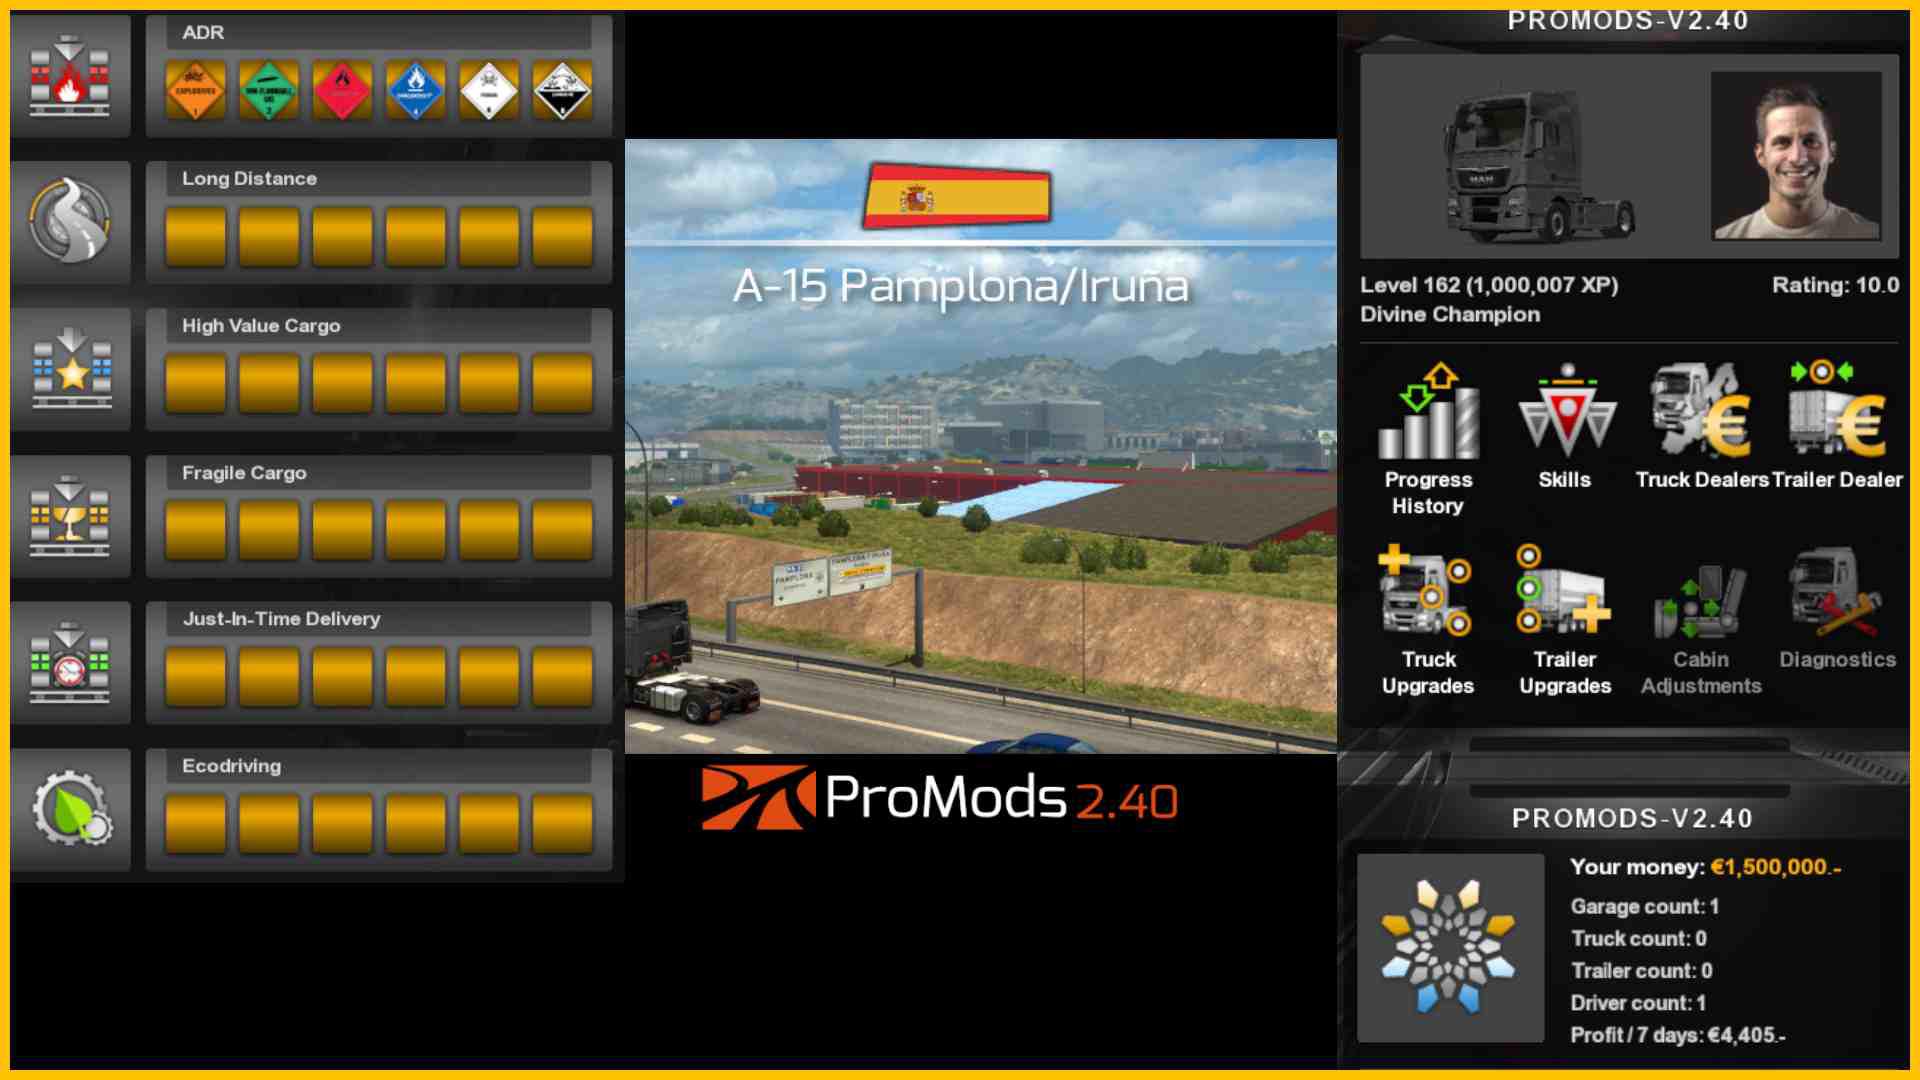 Profile for ProMods v2.40